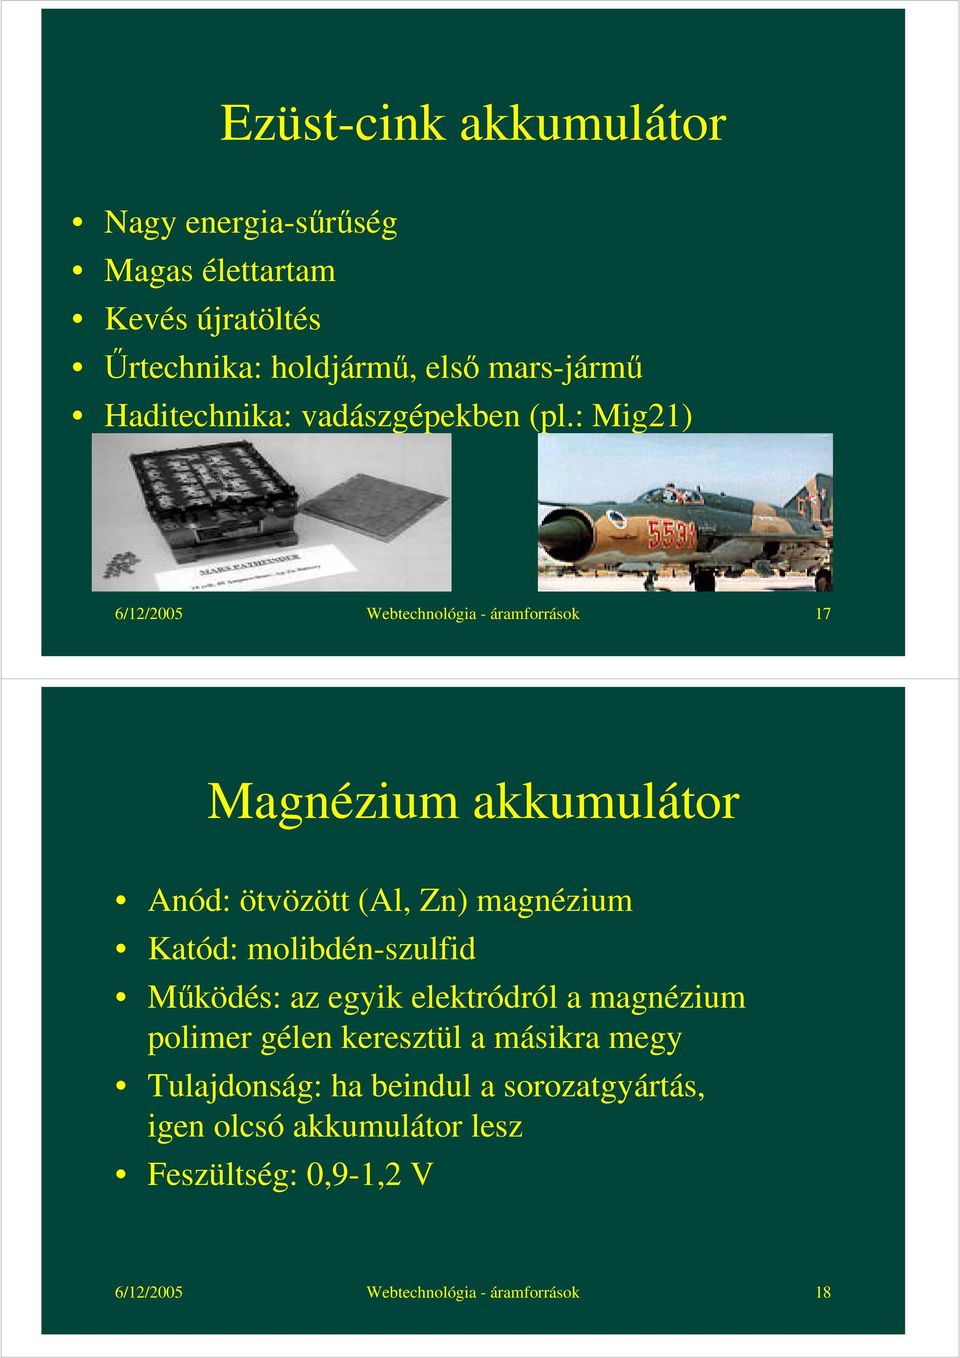 : Mig21) 6/12/2005 Webtechnológia - áramforrások 17 Magnézium akkumulátor Anód: ötvözött (Al, Zn) magnézium Katód: